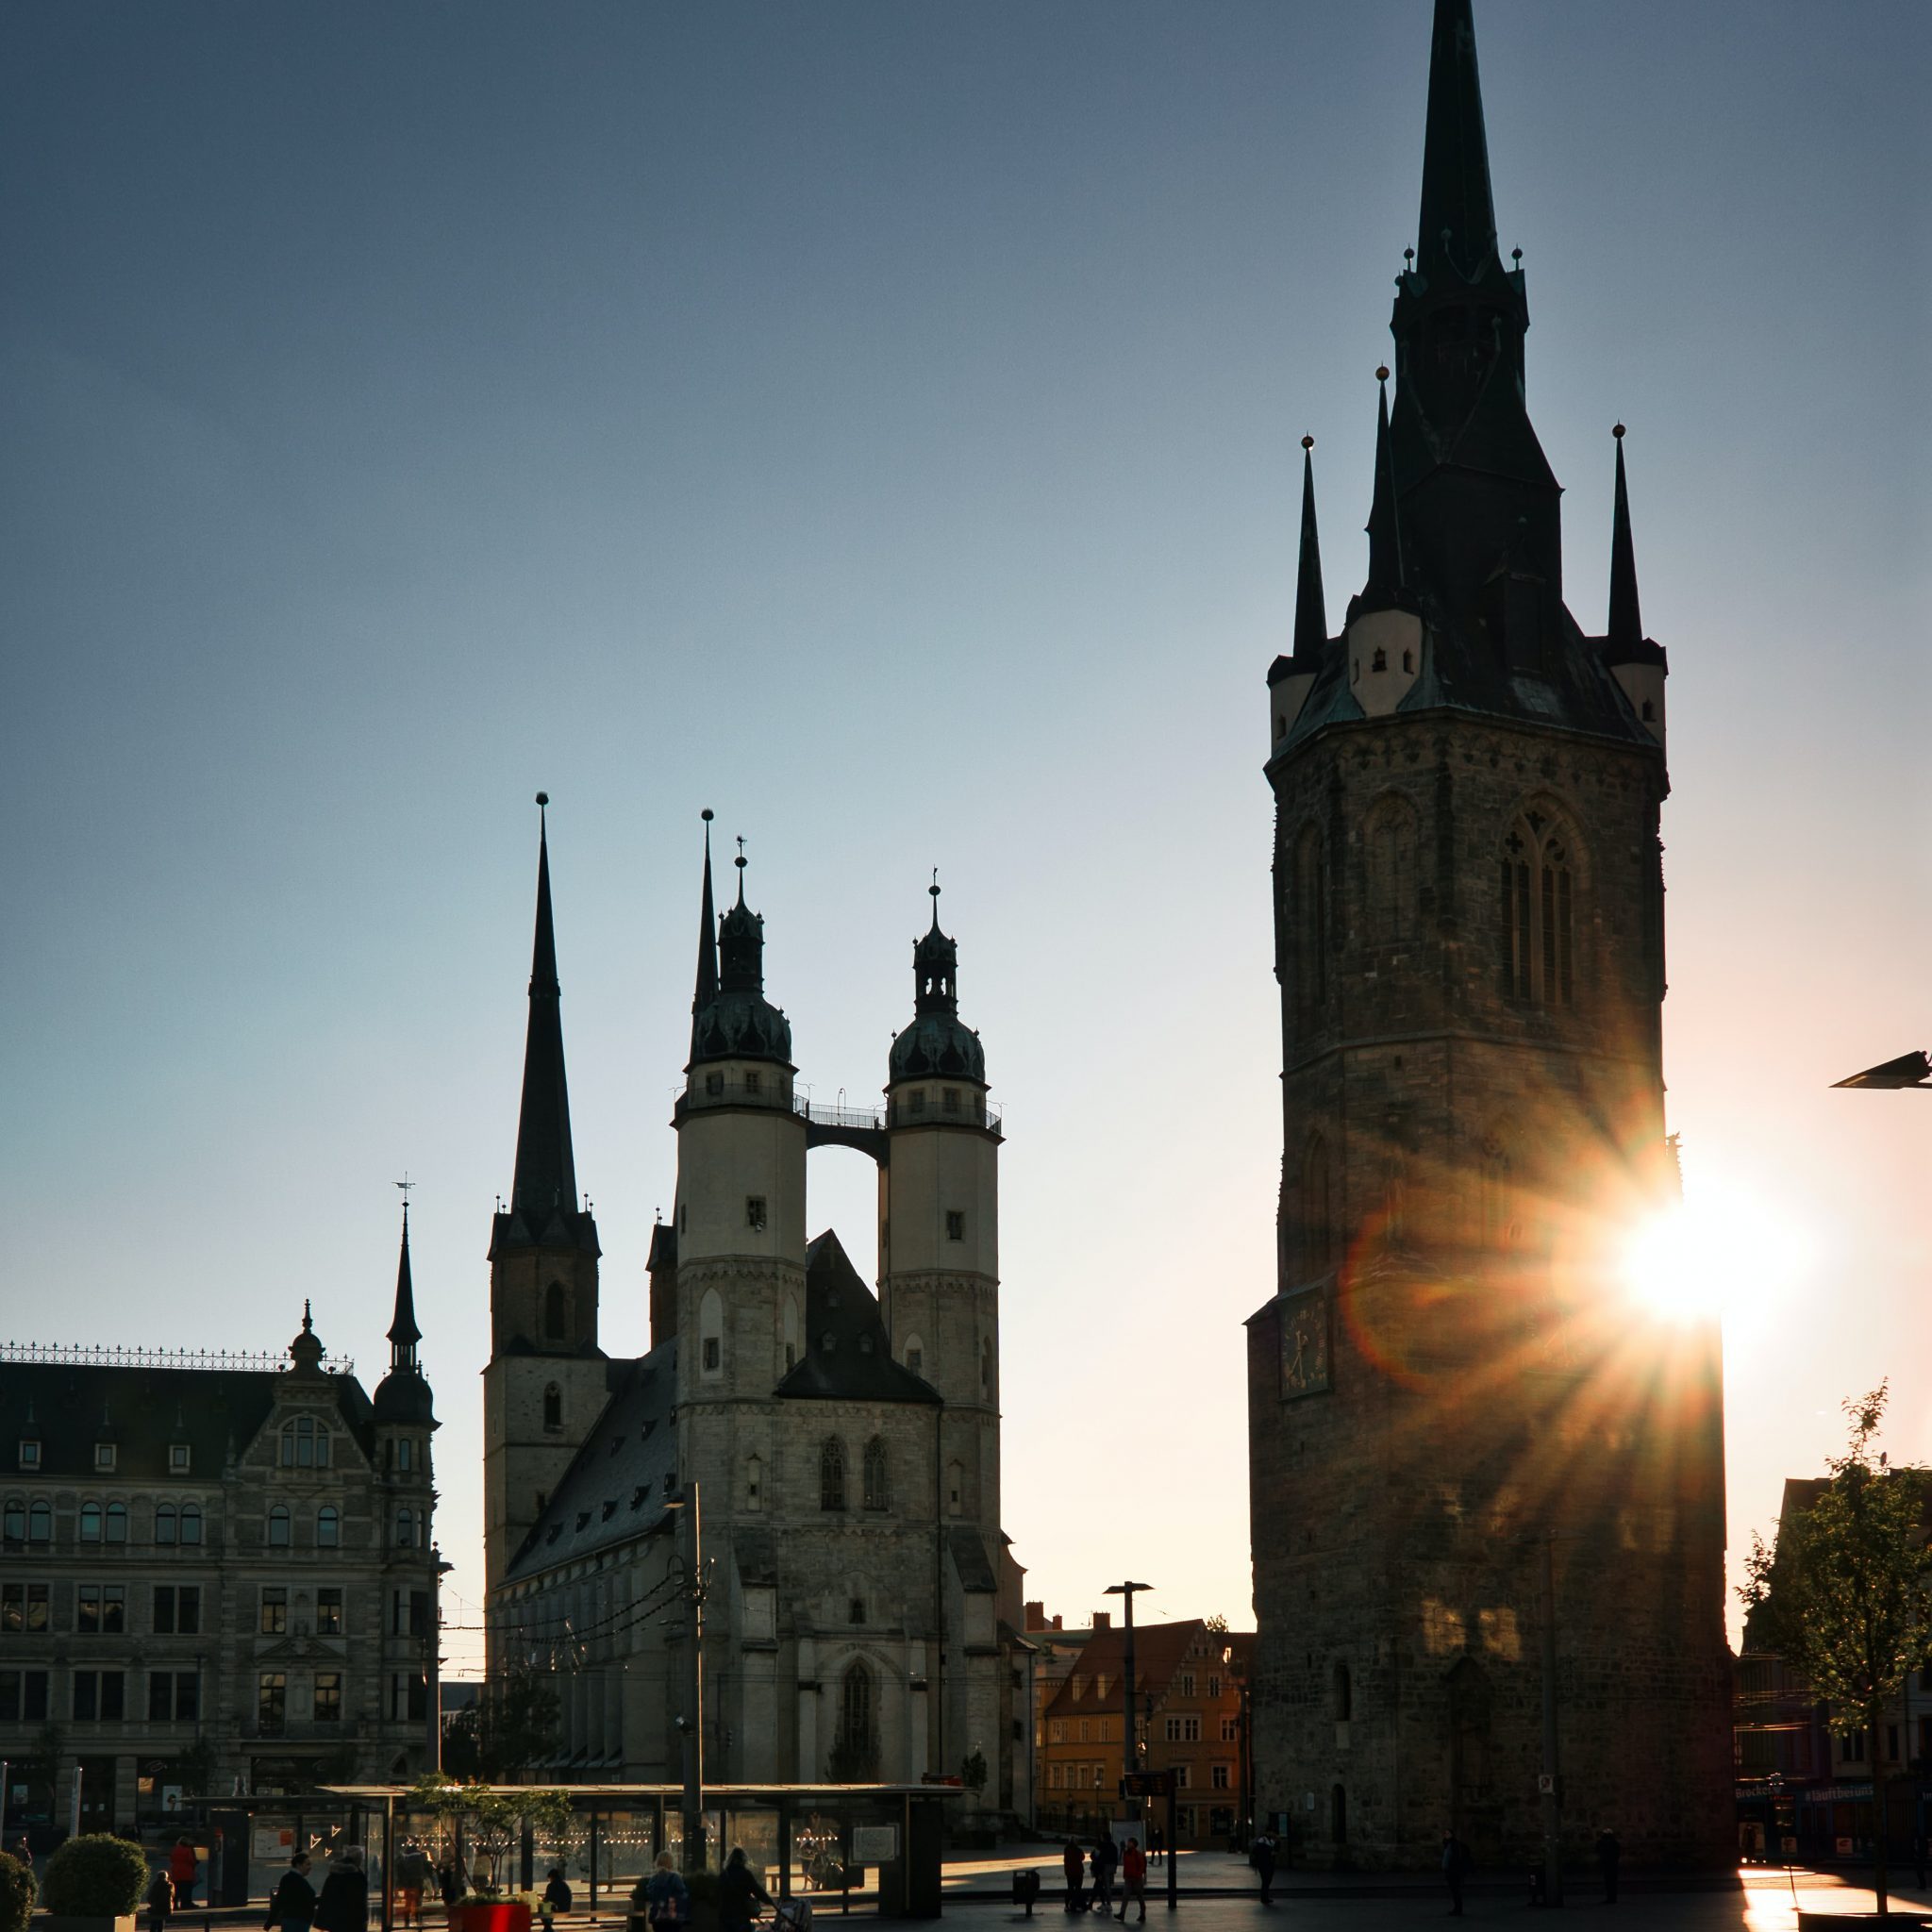 Halle Saale Wahrzeichen Marktkirche und Roter Turm vor untergehender Sonne und wolkenfreiem Himmel